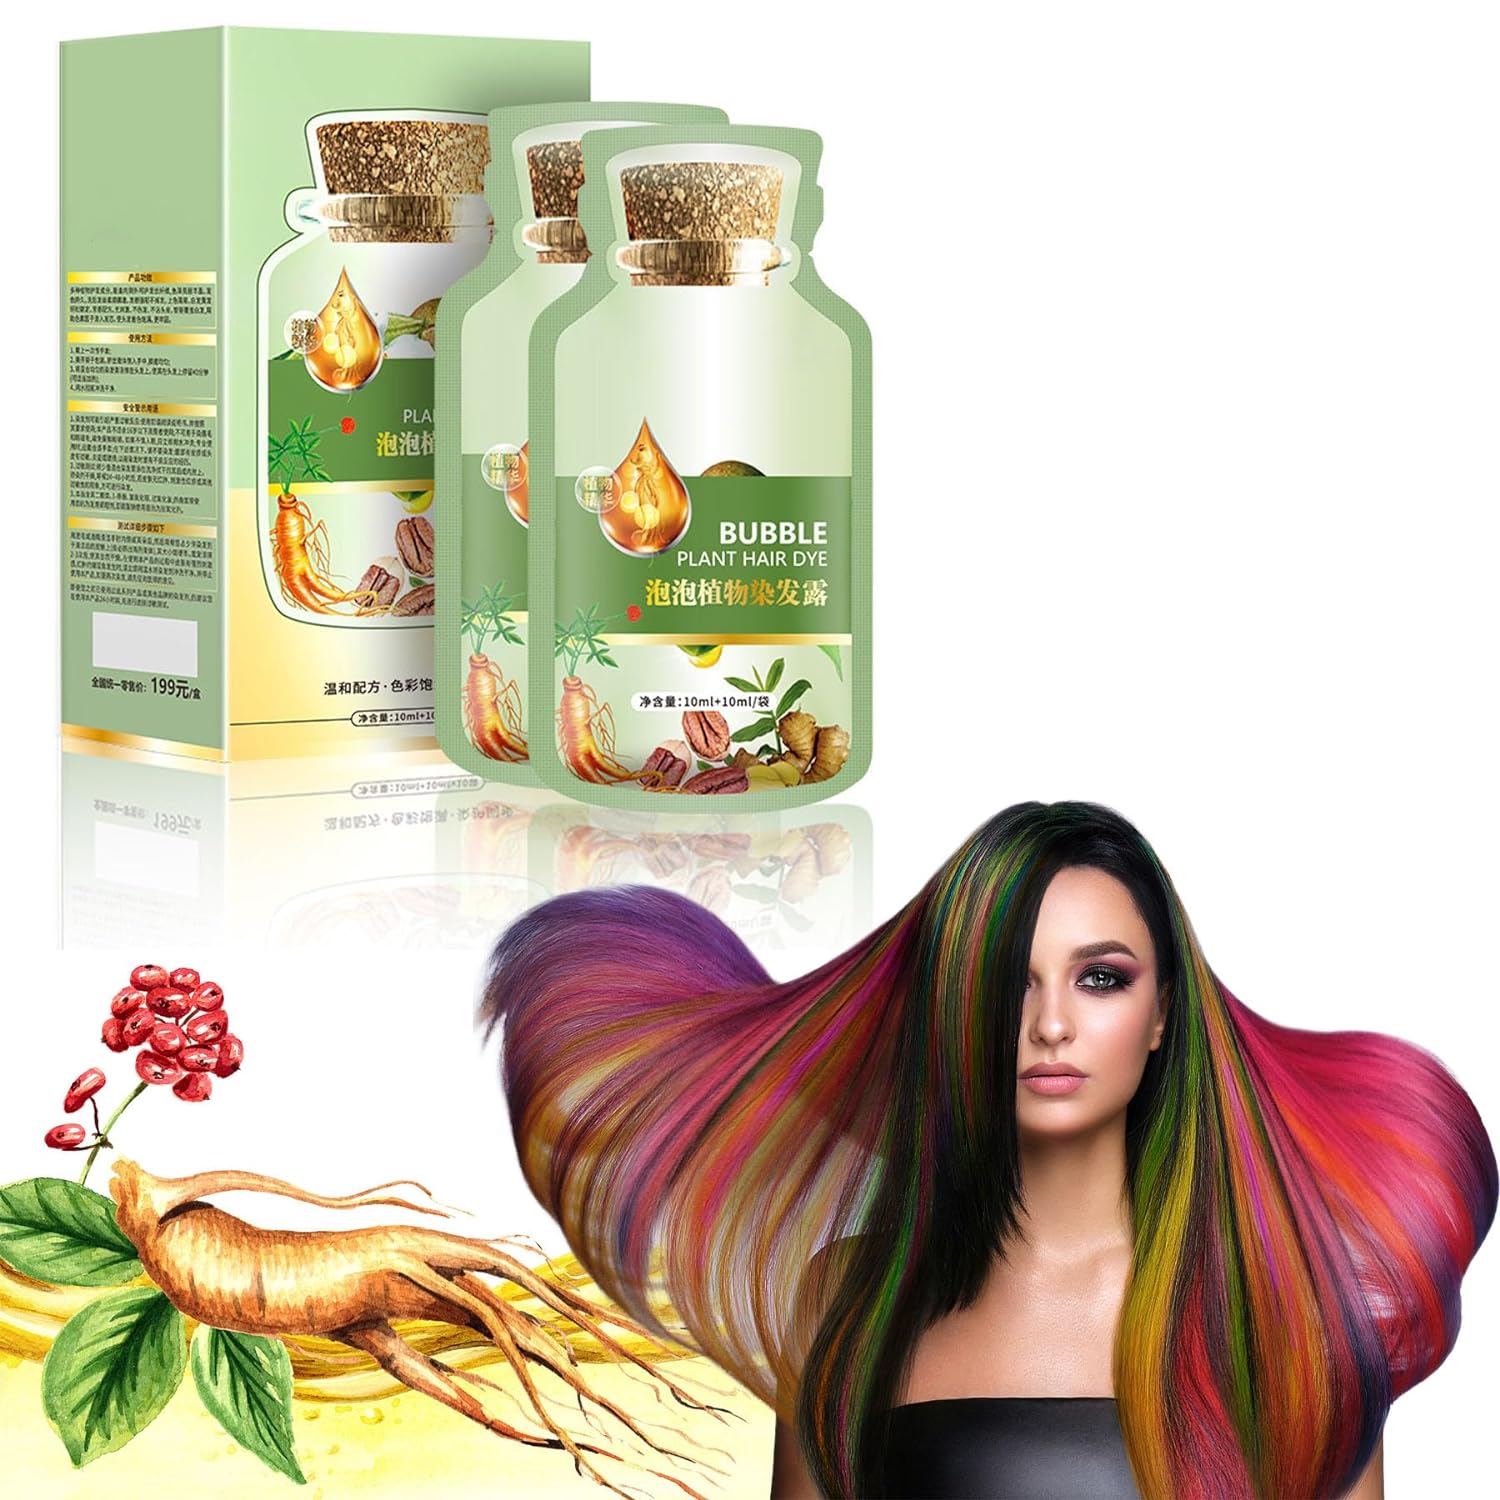 Natural Plant Hair Dye, HUANG YI BUBBLE PLANT HAIR DYE 